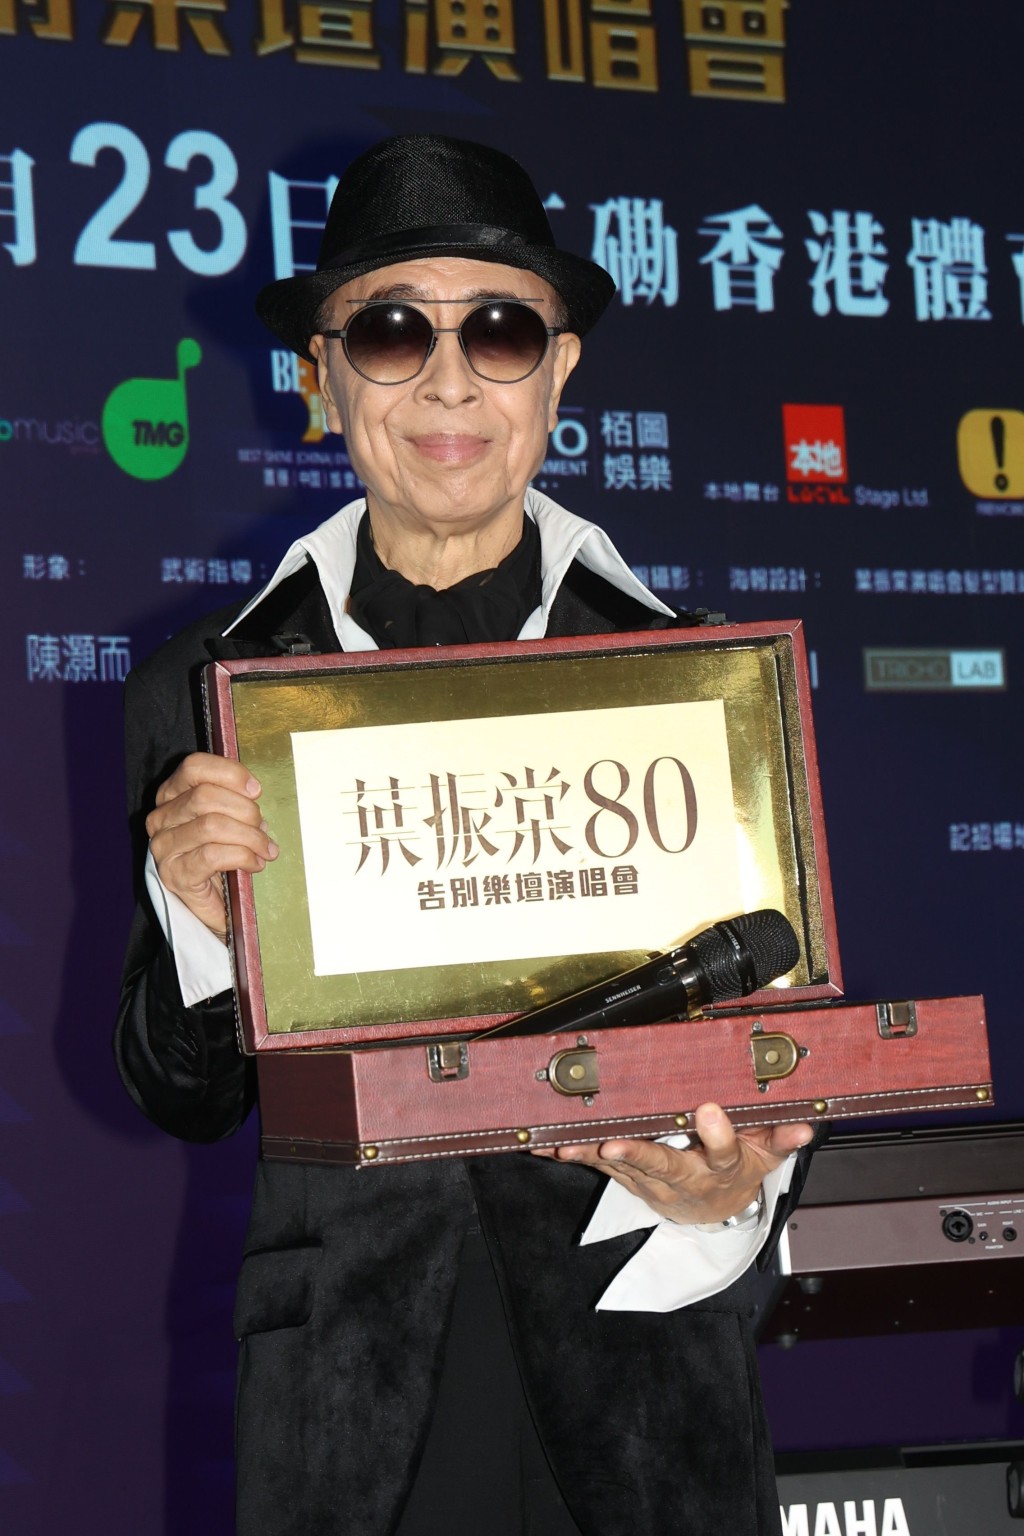 現年80歲的殿堂級歌手葉振棠，將於本月23日舉行首個紅館演唱會「葉振棠 80告別樂壇演唱會」。